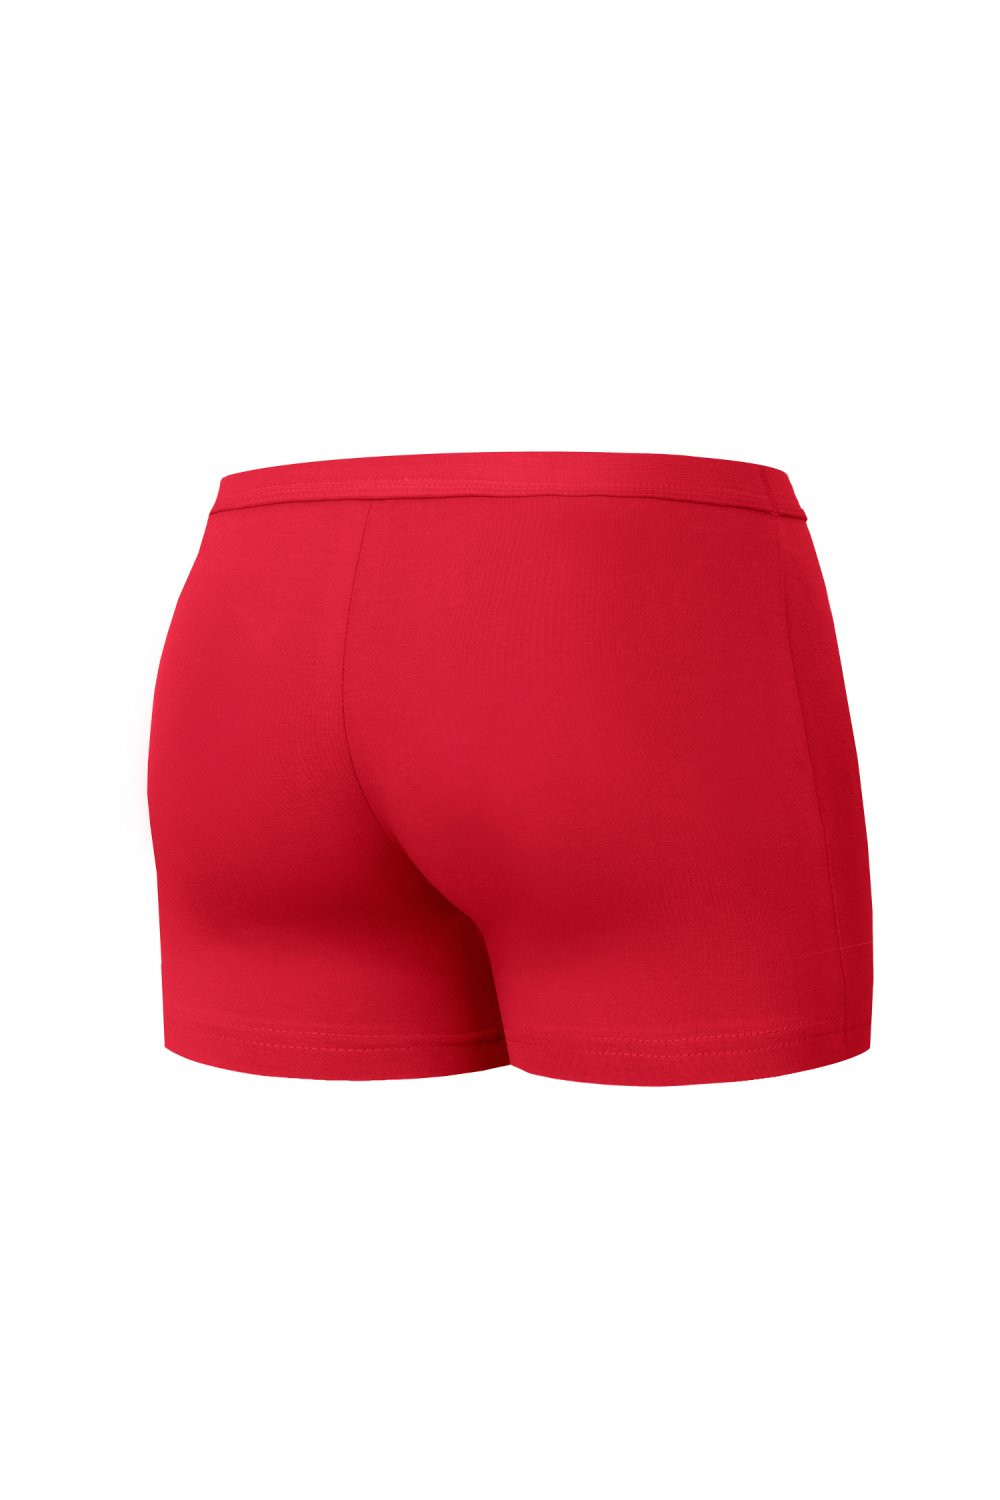 Pánské boxerky 223 Authentic mini red - CORNETTE Červená S